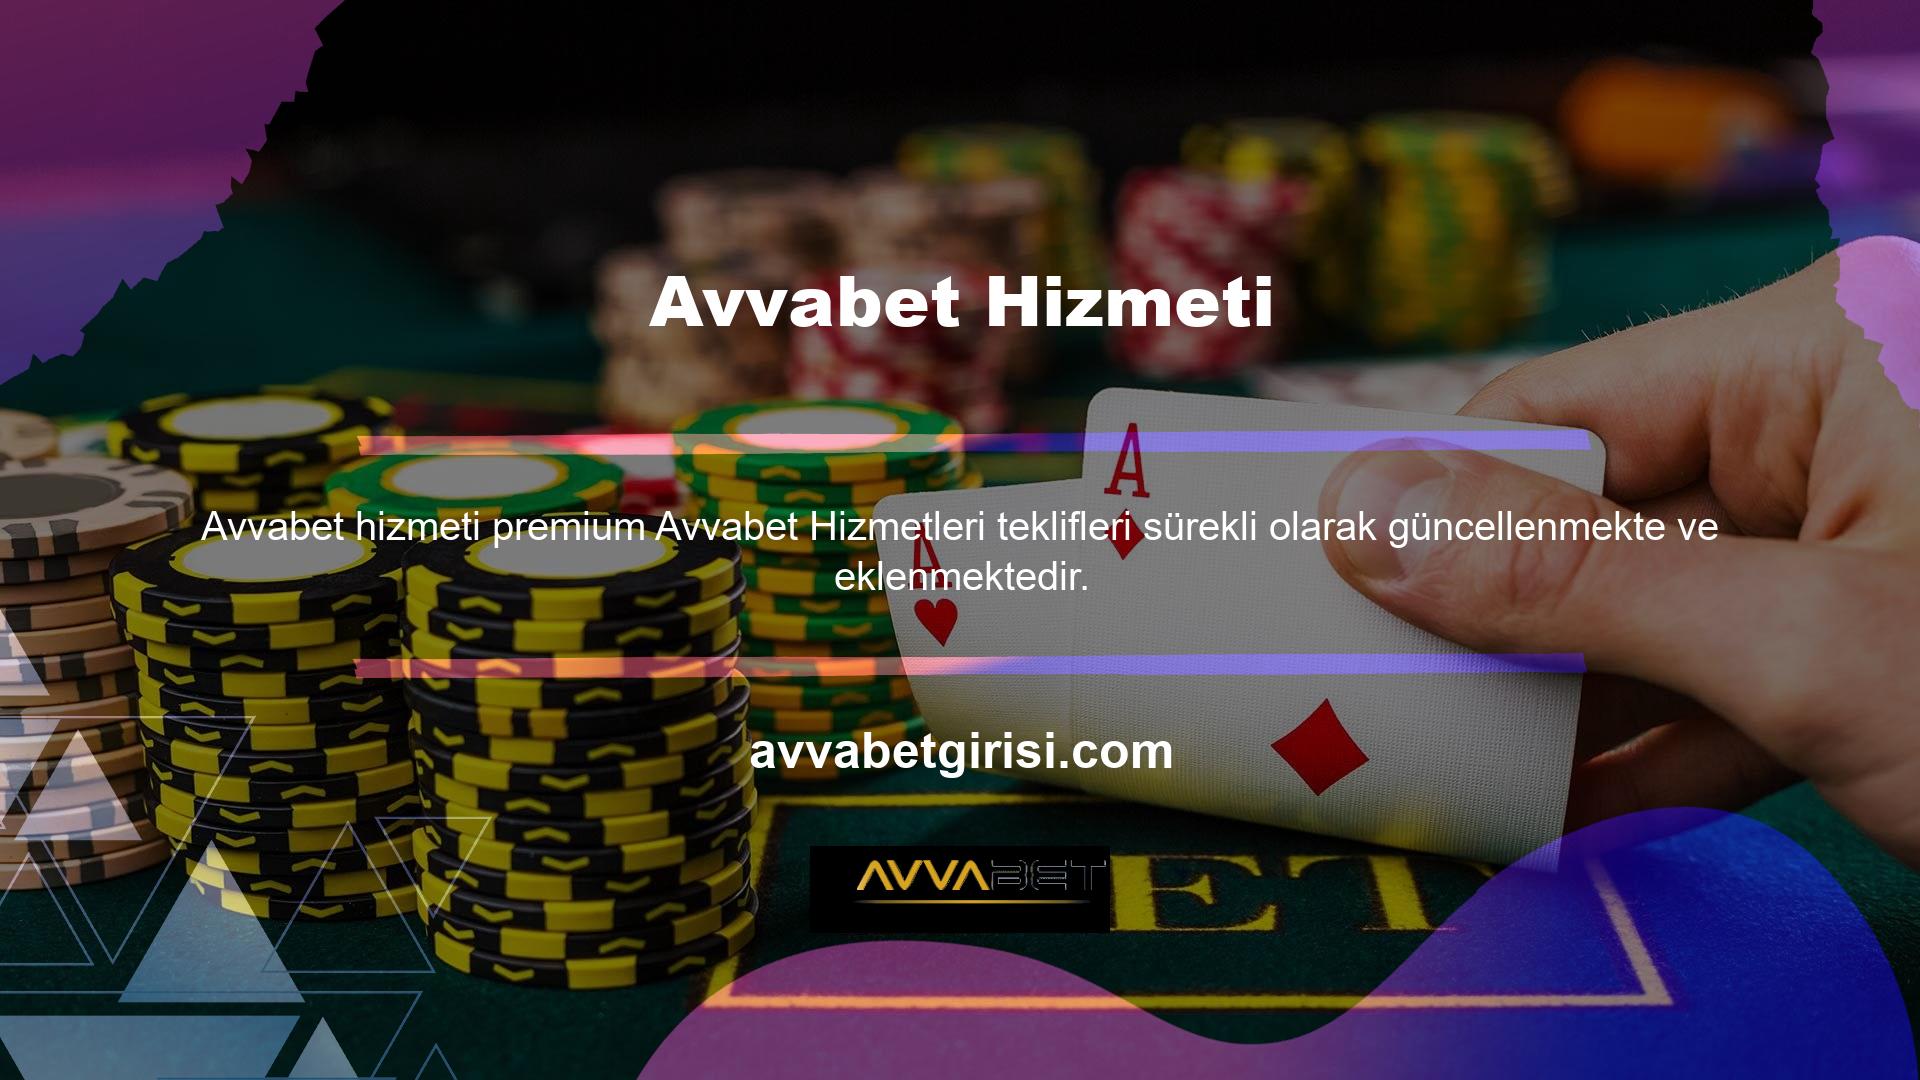 Ülkemizin en eski Casino platformlarından biri olan Avvabet, kullanıcılarına tutarlı gelir garantisi veren popüler bir seçimdir